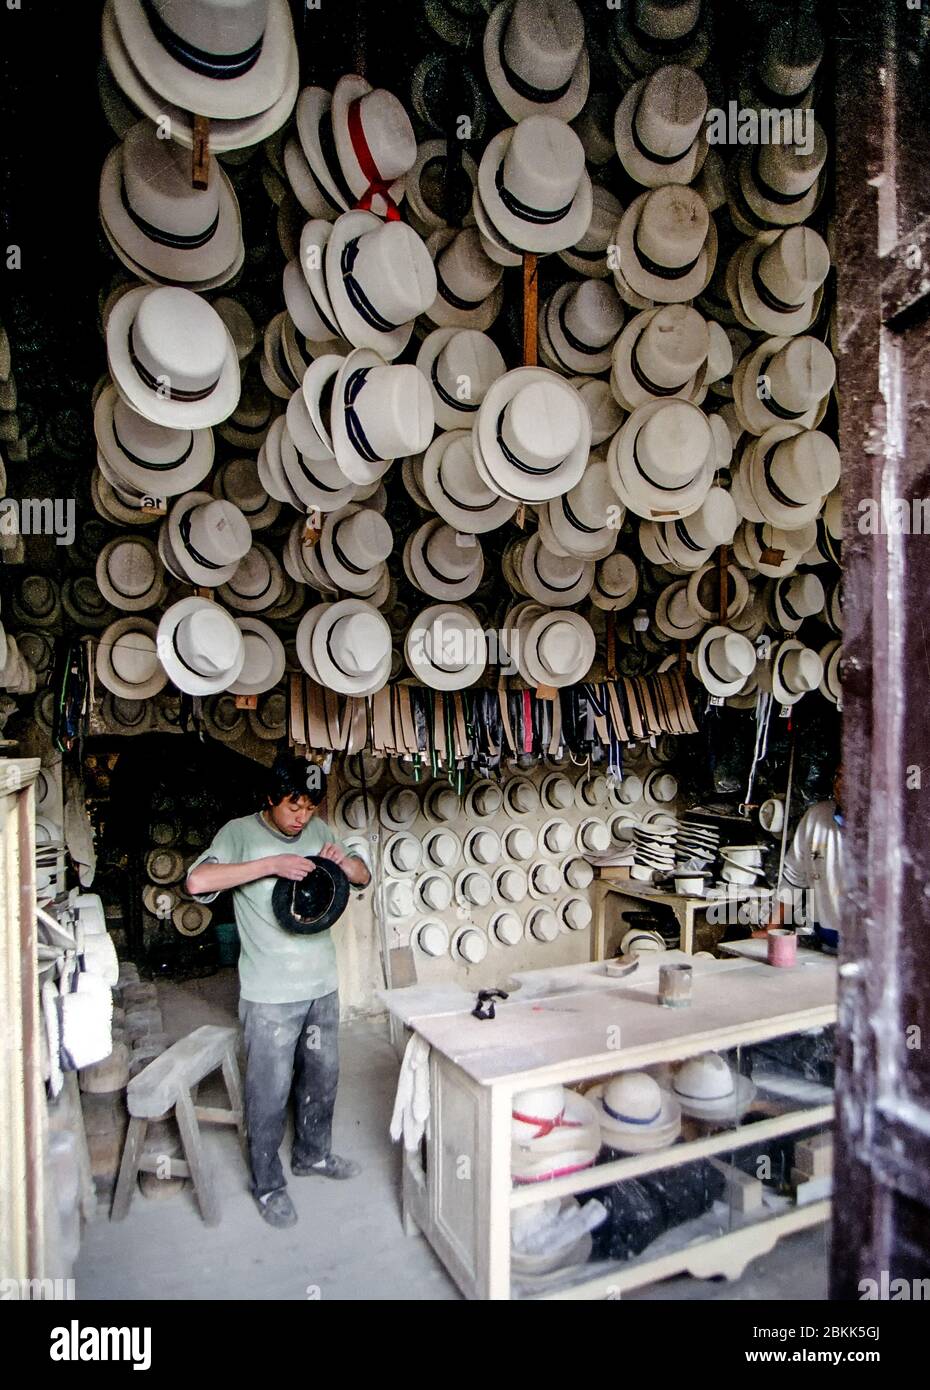 Chapeaux faits main exposés en Équateur Banque D'Images